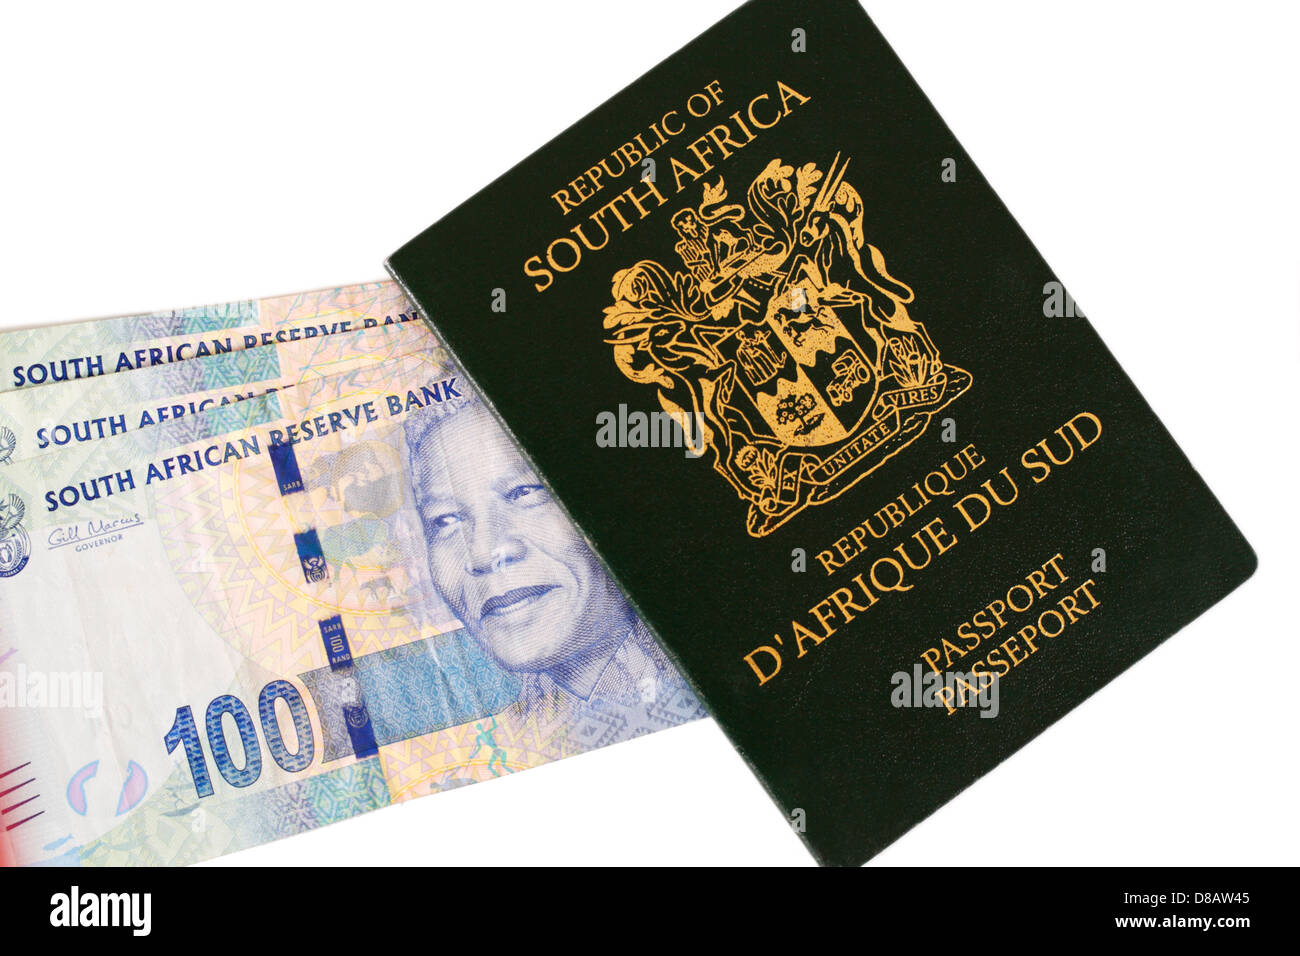 Einen Pass für die Republik Südafrika mit neuen südafrikanischen Rands Währung Stockfoto